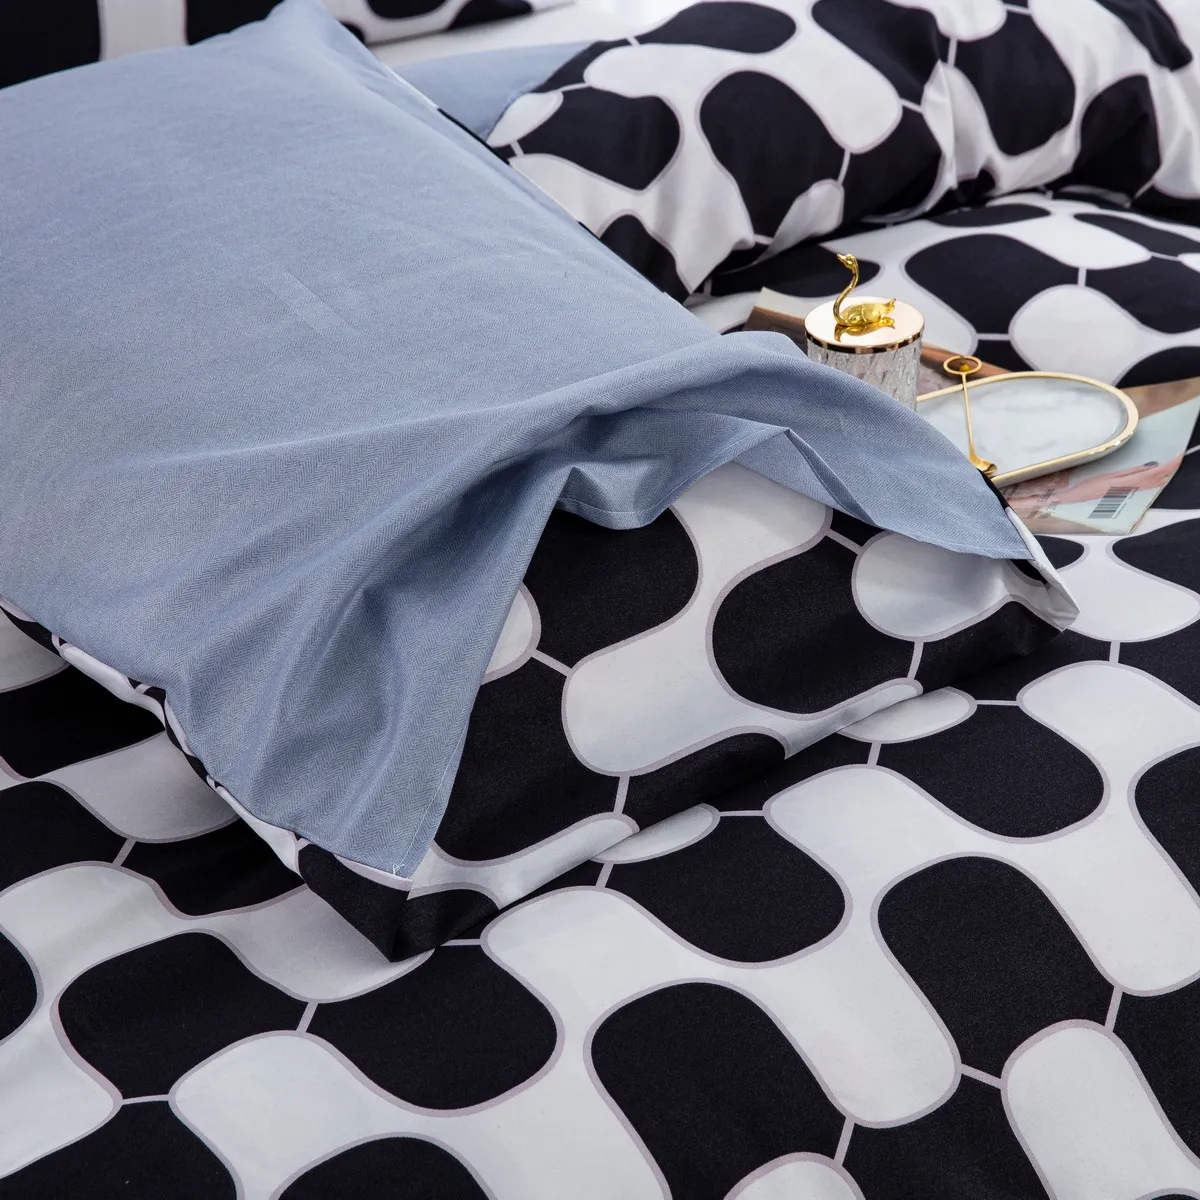 2/3pcs modernes und minimalistisches Cartoon-Bettwäscheset mit geometrischem Muster, einschließlich Bettbezug und Kissenbezügen Schwarz und weiß big image 1